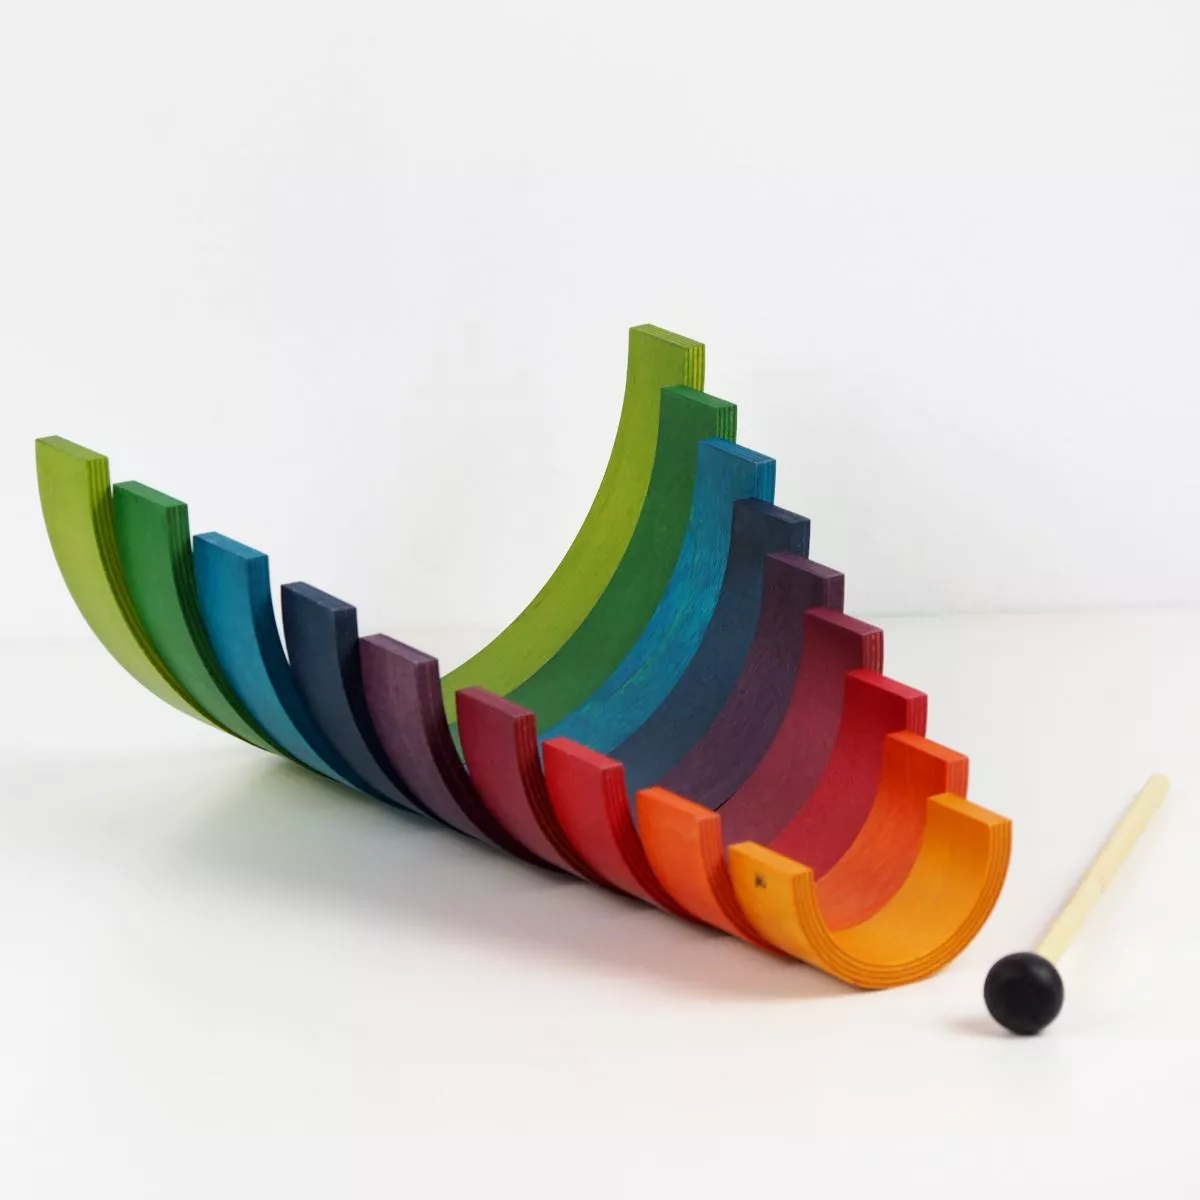 Rainbow – Originales Naef-Spiel aus Holz mit vielfacher Verwendung